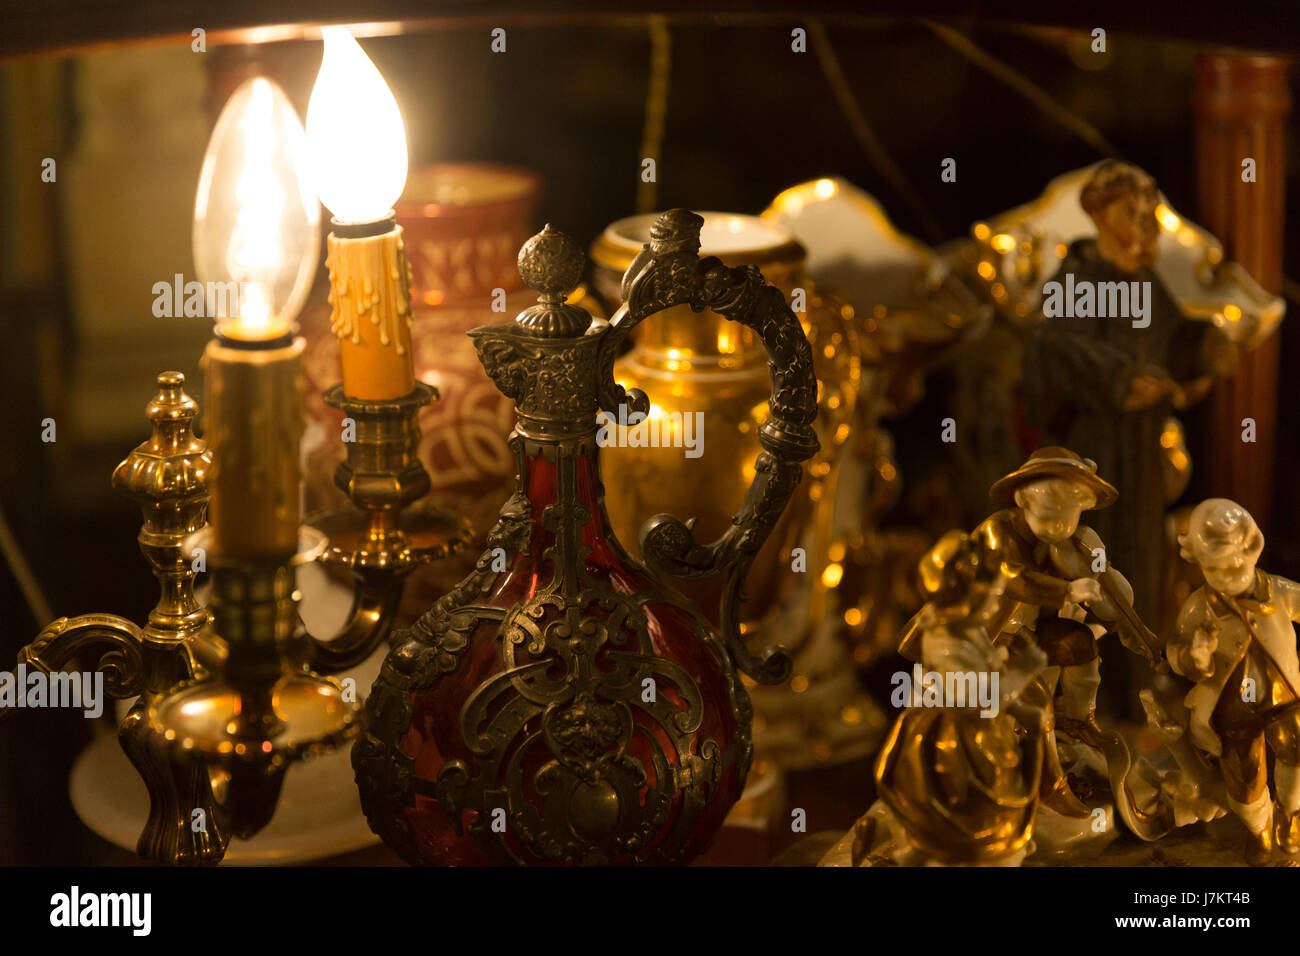 Antiguo jarra & iluminación de sweet home. Foto de stock